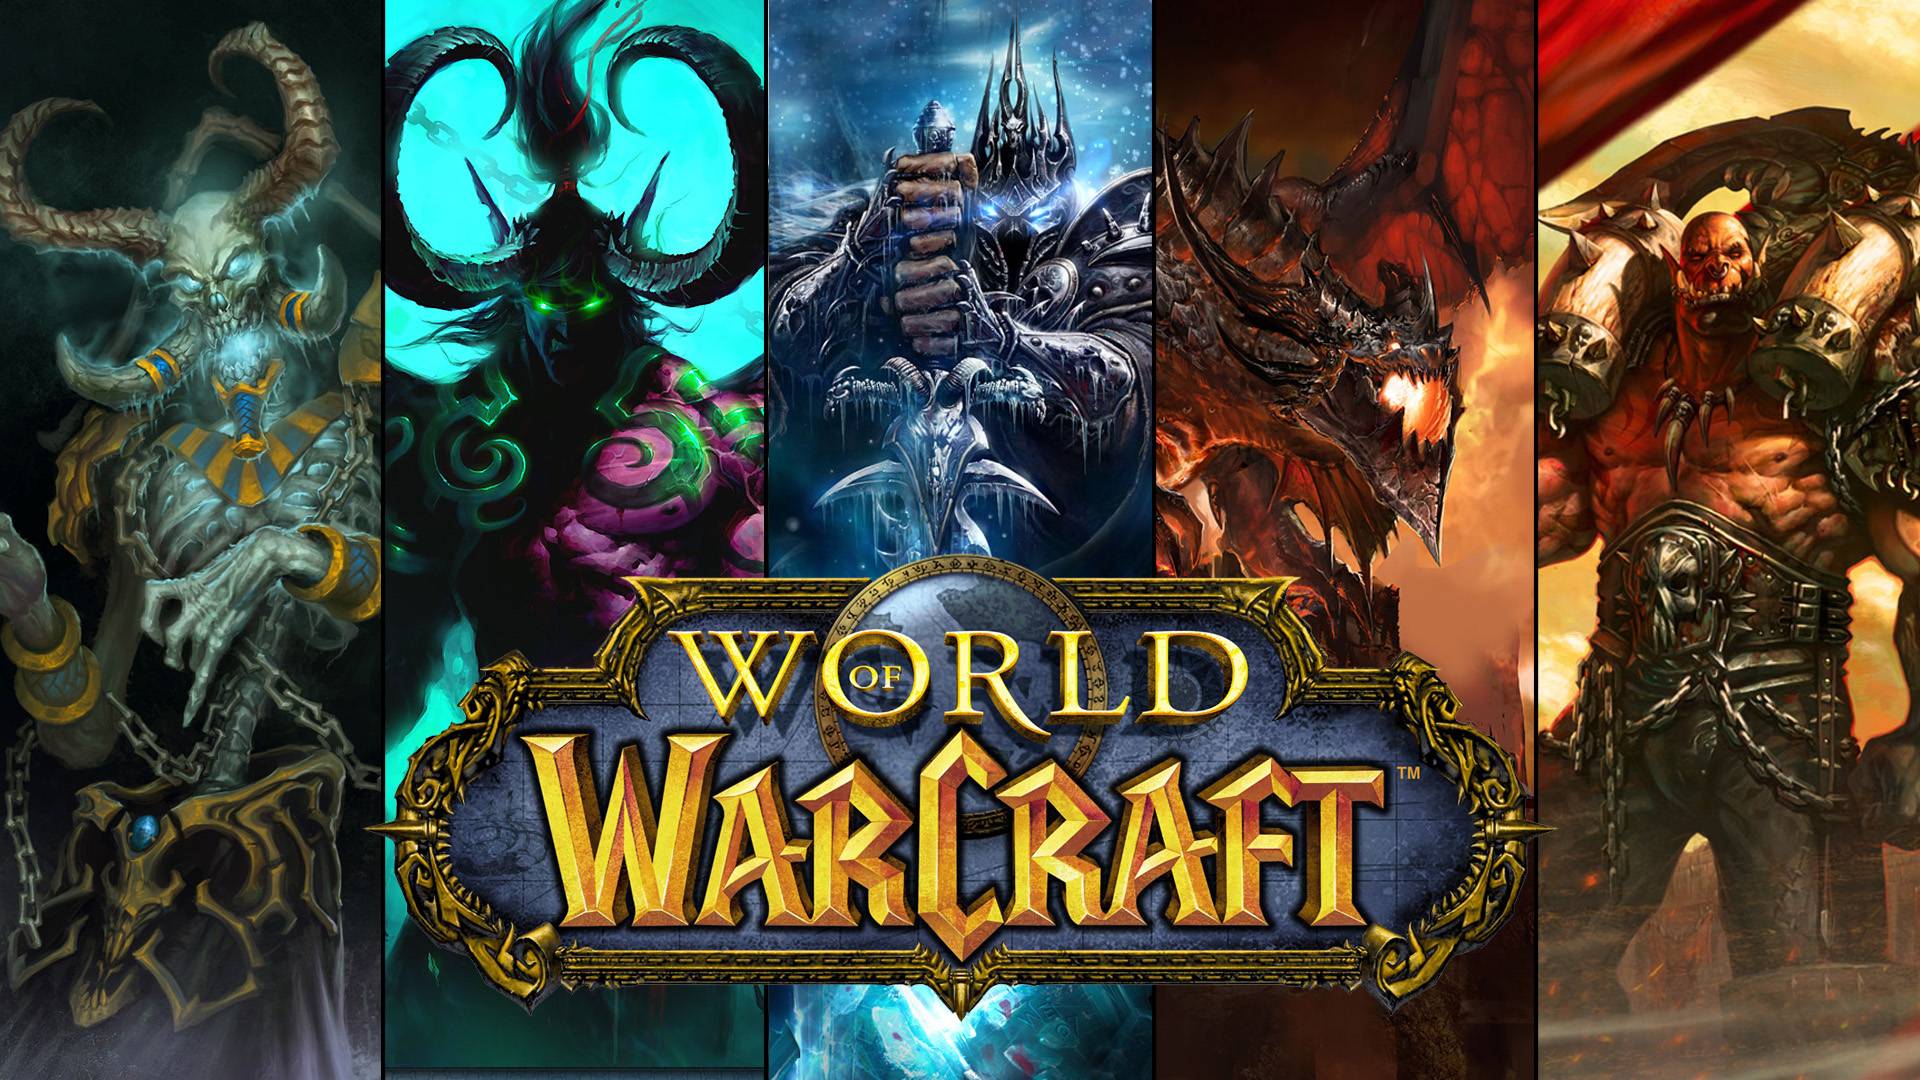 Et si on avait de nouveaux films Warcraft à l'avenir ?